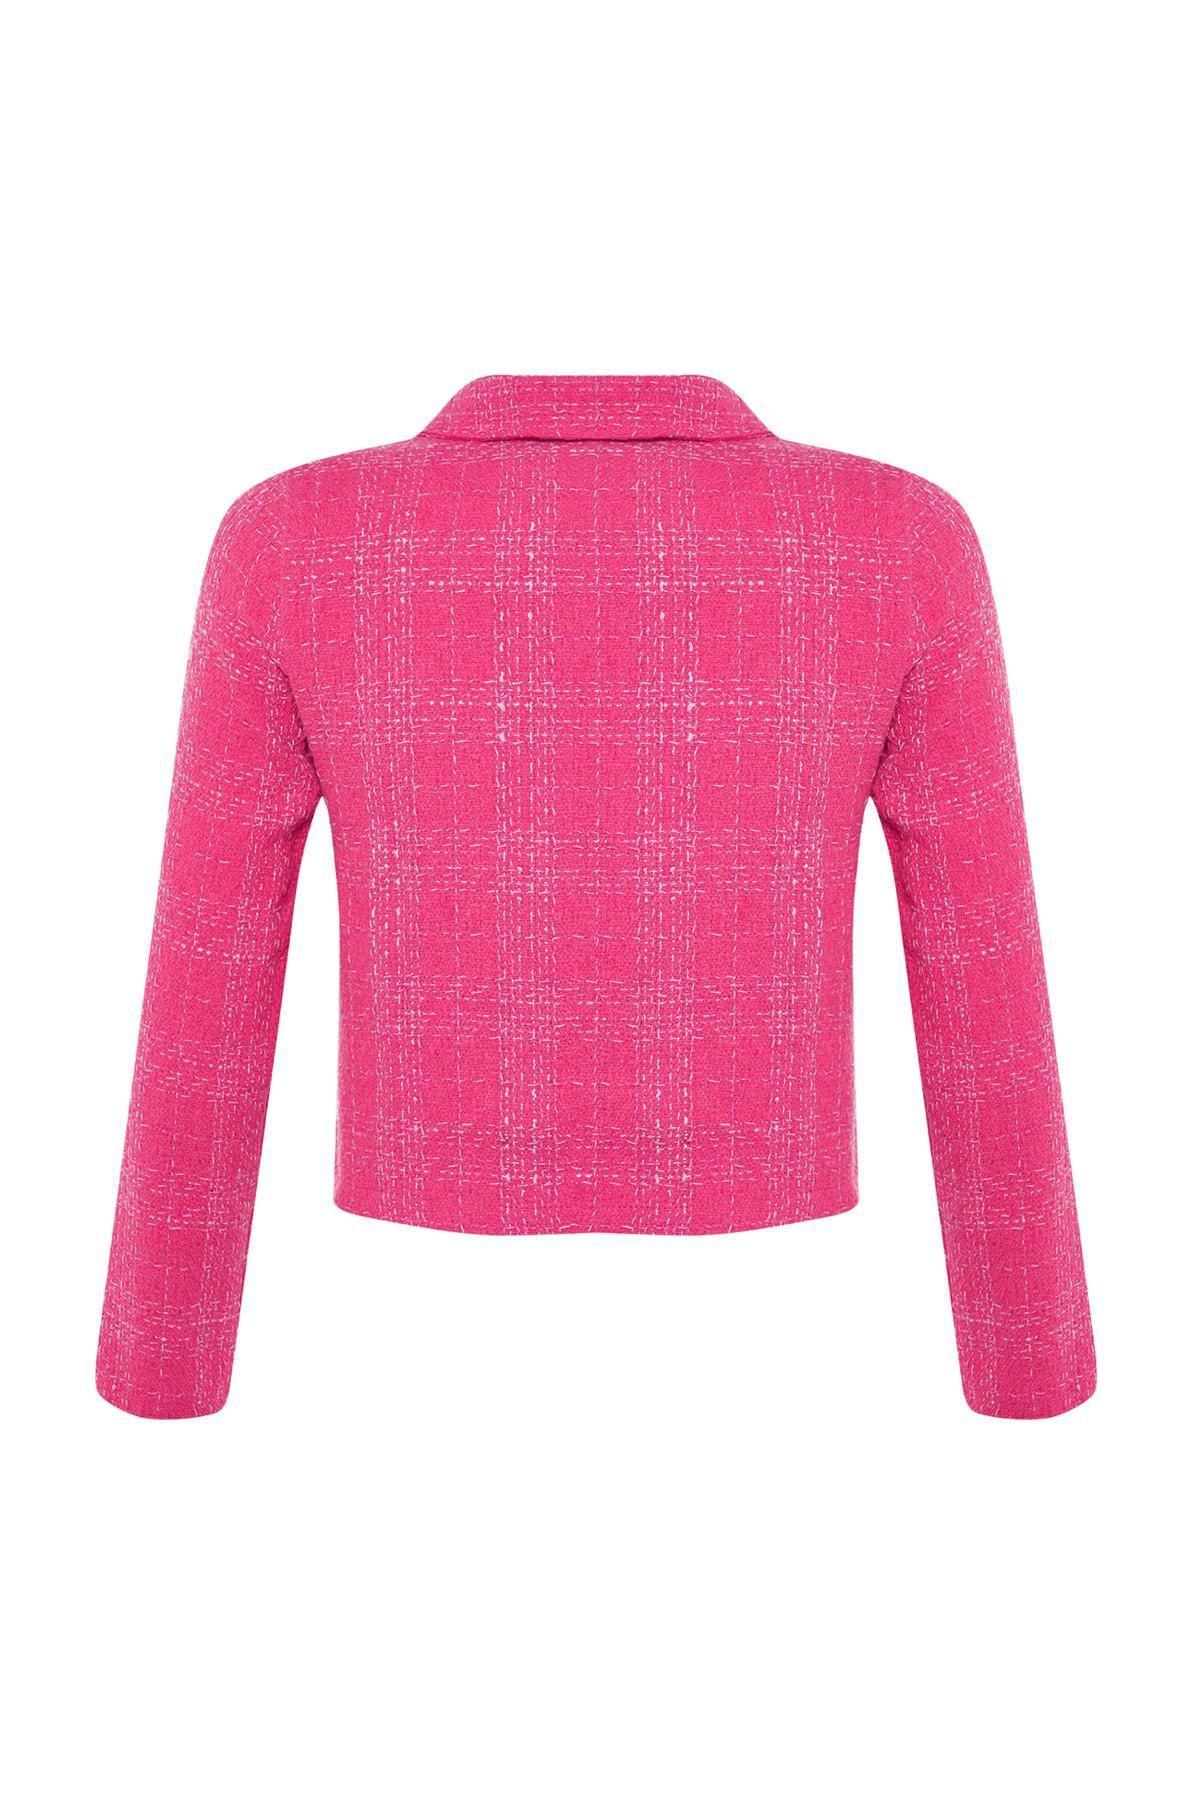 Trendyol - Pink Shirt Collar Jacket